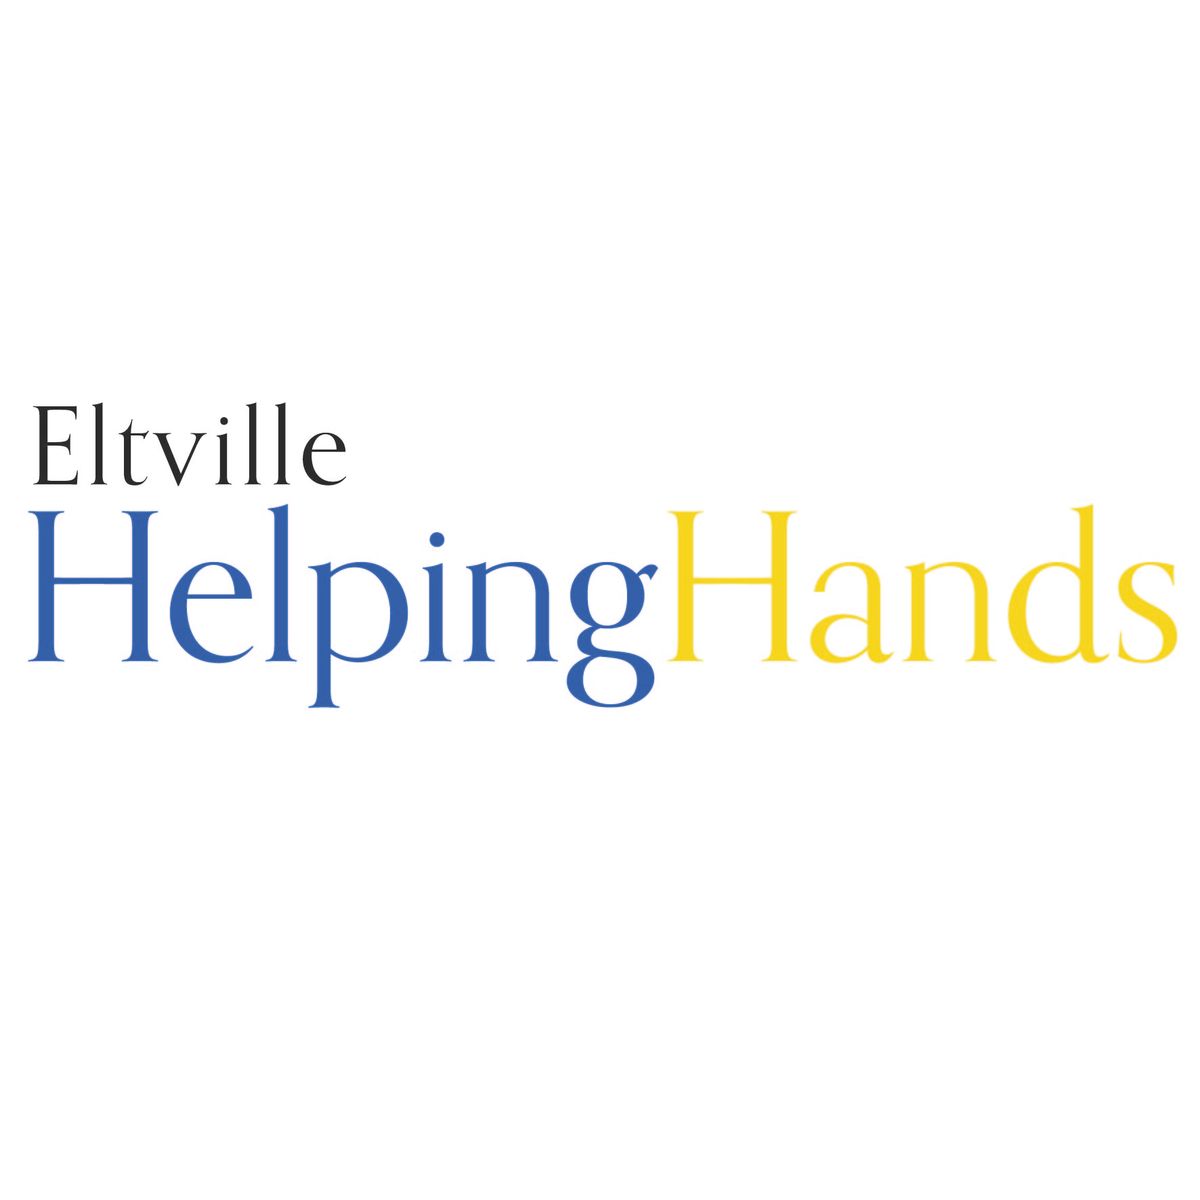 (c) Eltville-helpinghands.de